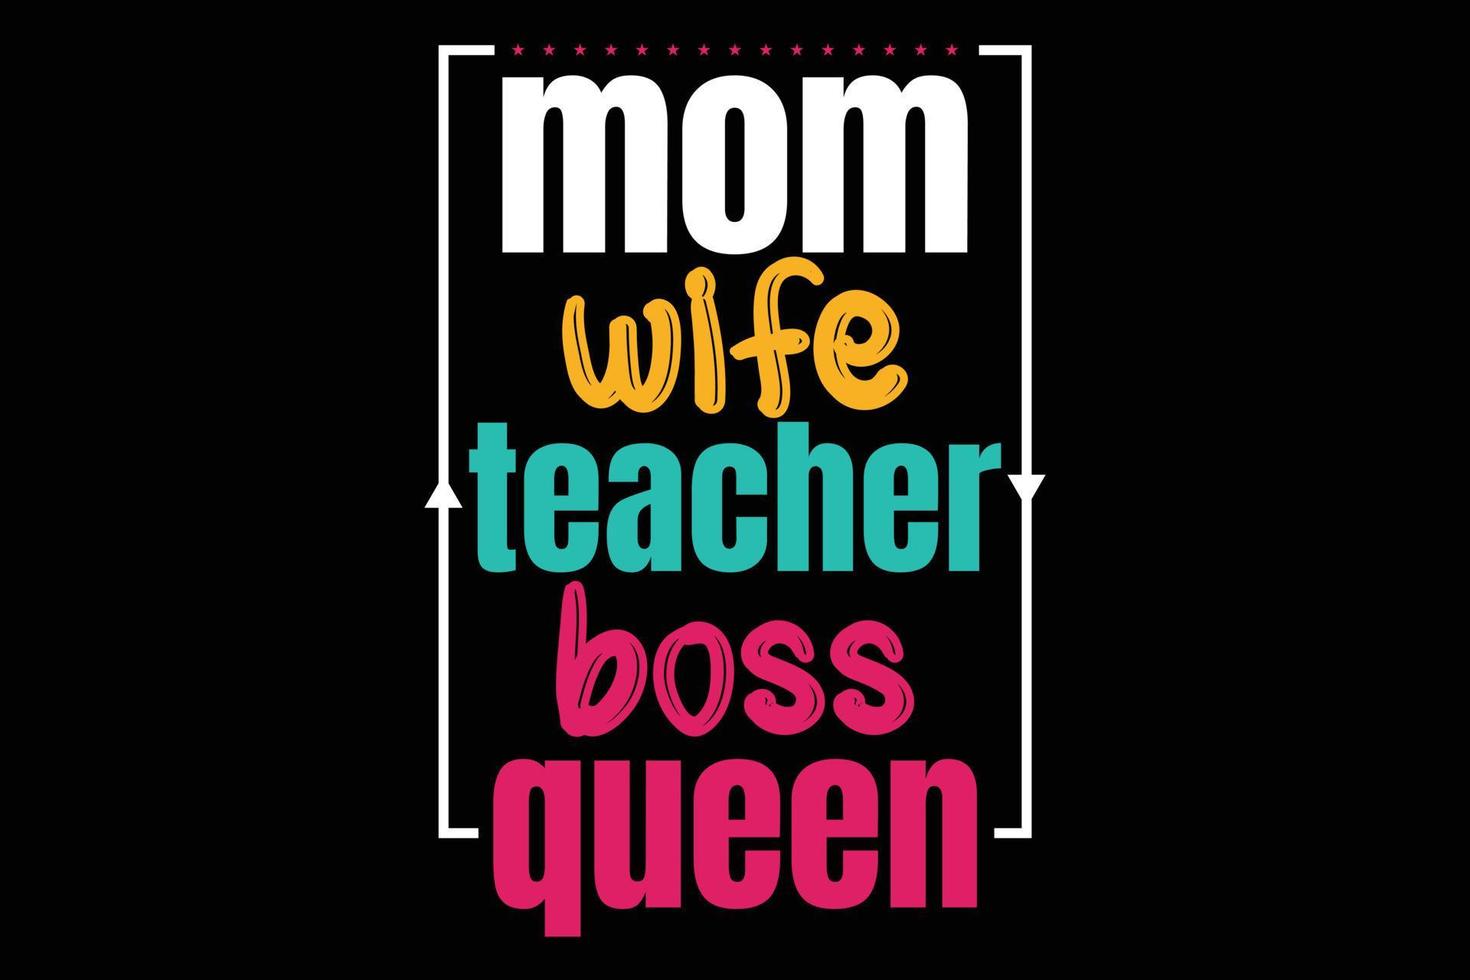 maman épouse professeur patron reine typographie fête des mères t-shirt vecteur